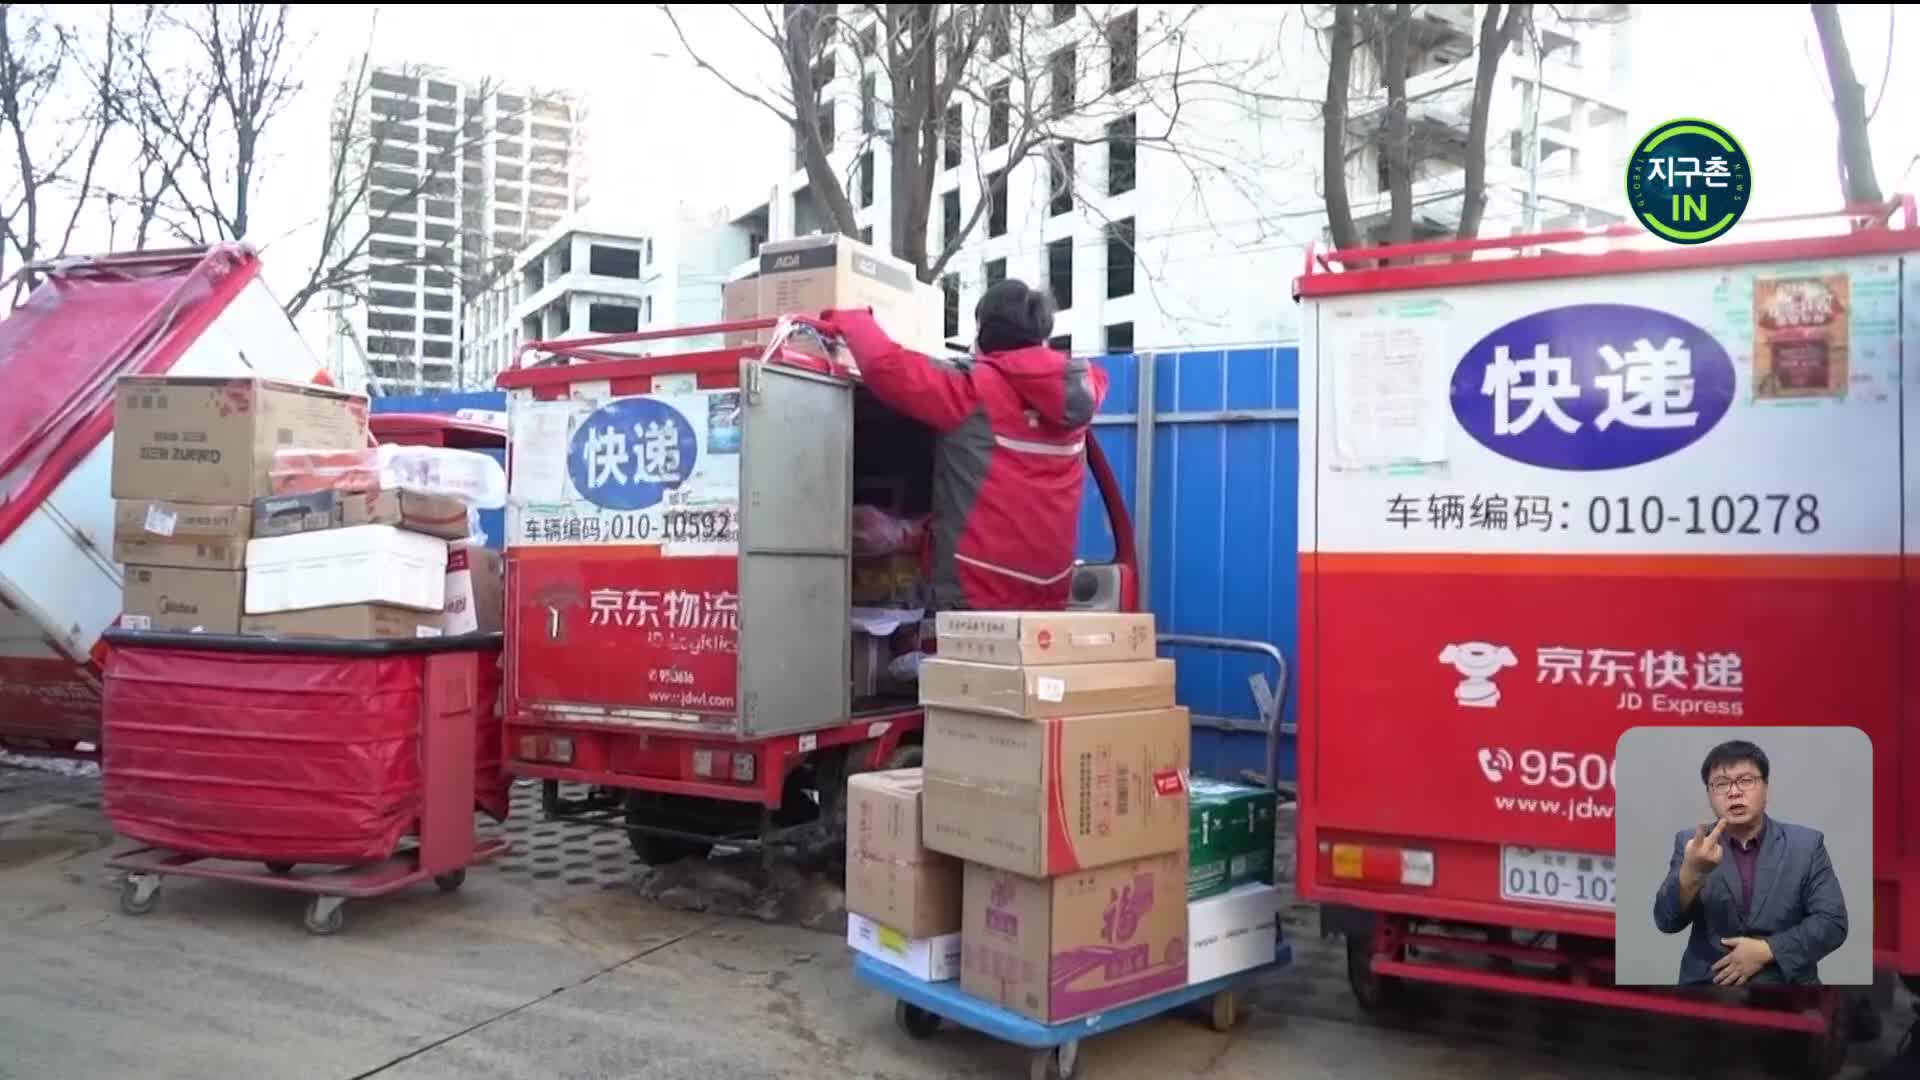 [지구촌 IN] 코로나19로 호황 ‘중국 배달업’